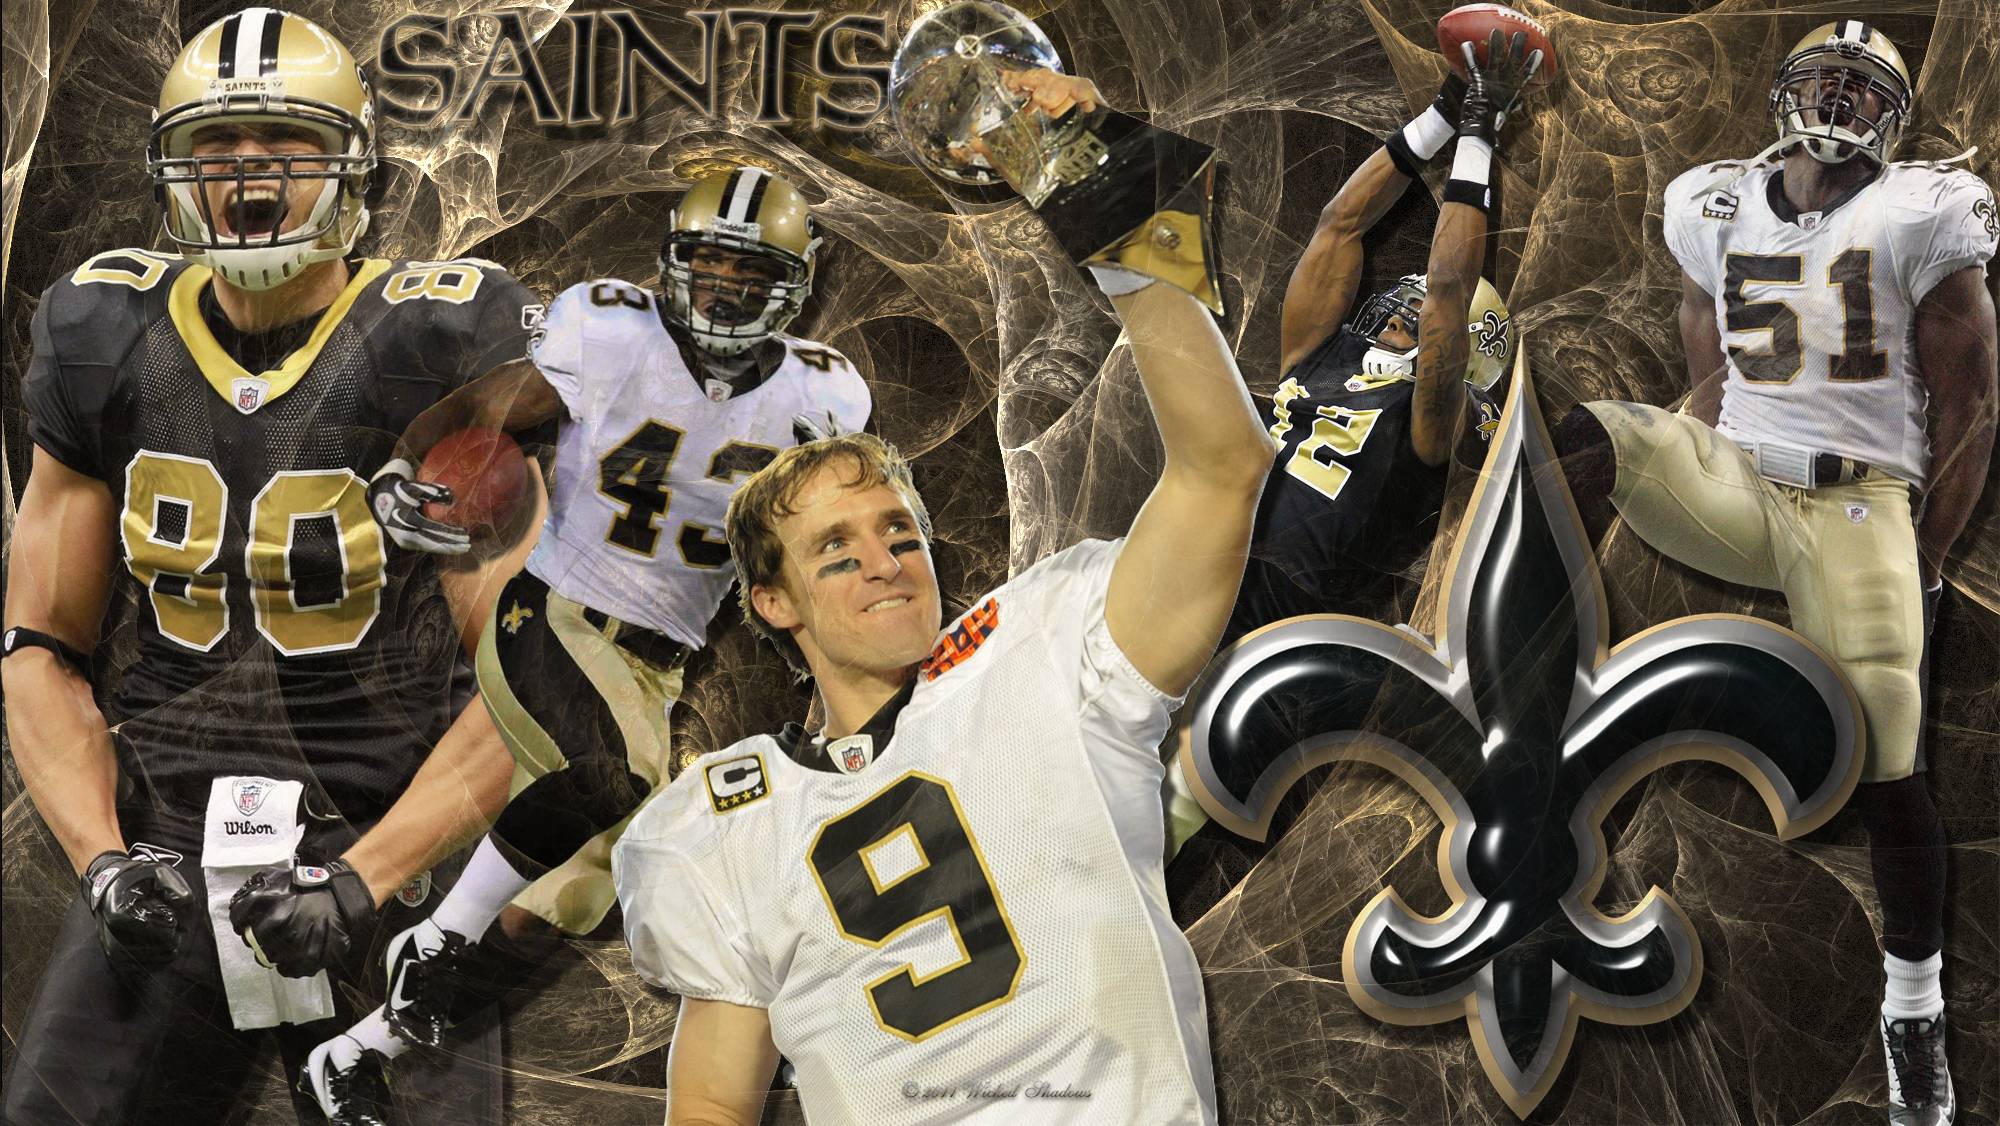 Outstanding New Orleans Saints wallpaper. New Orleans Saints